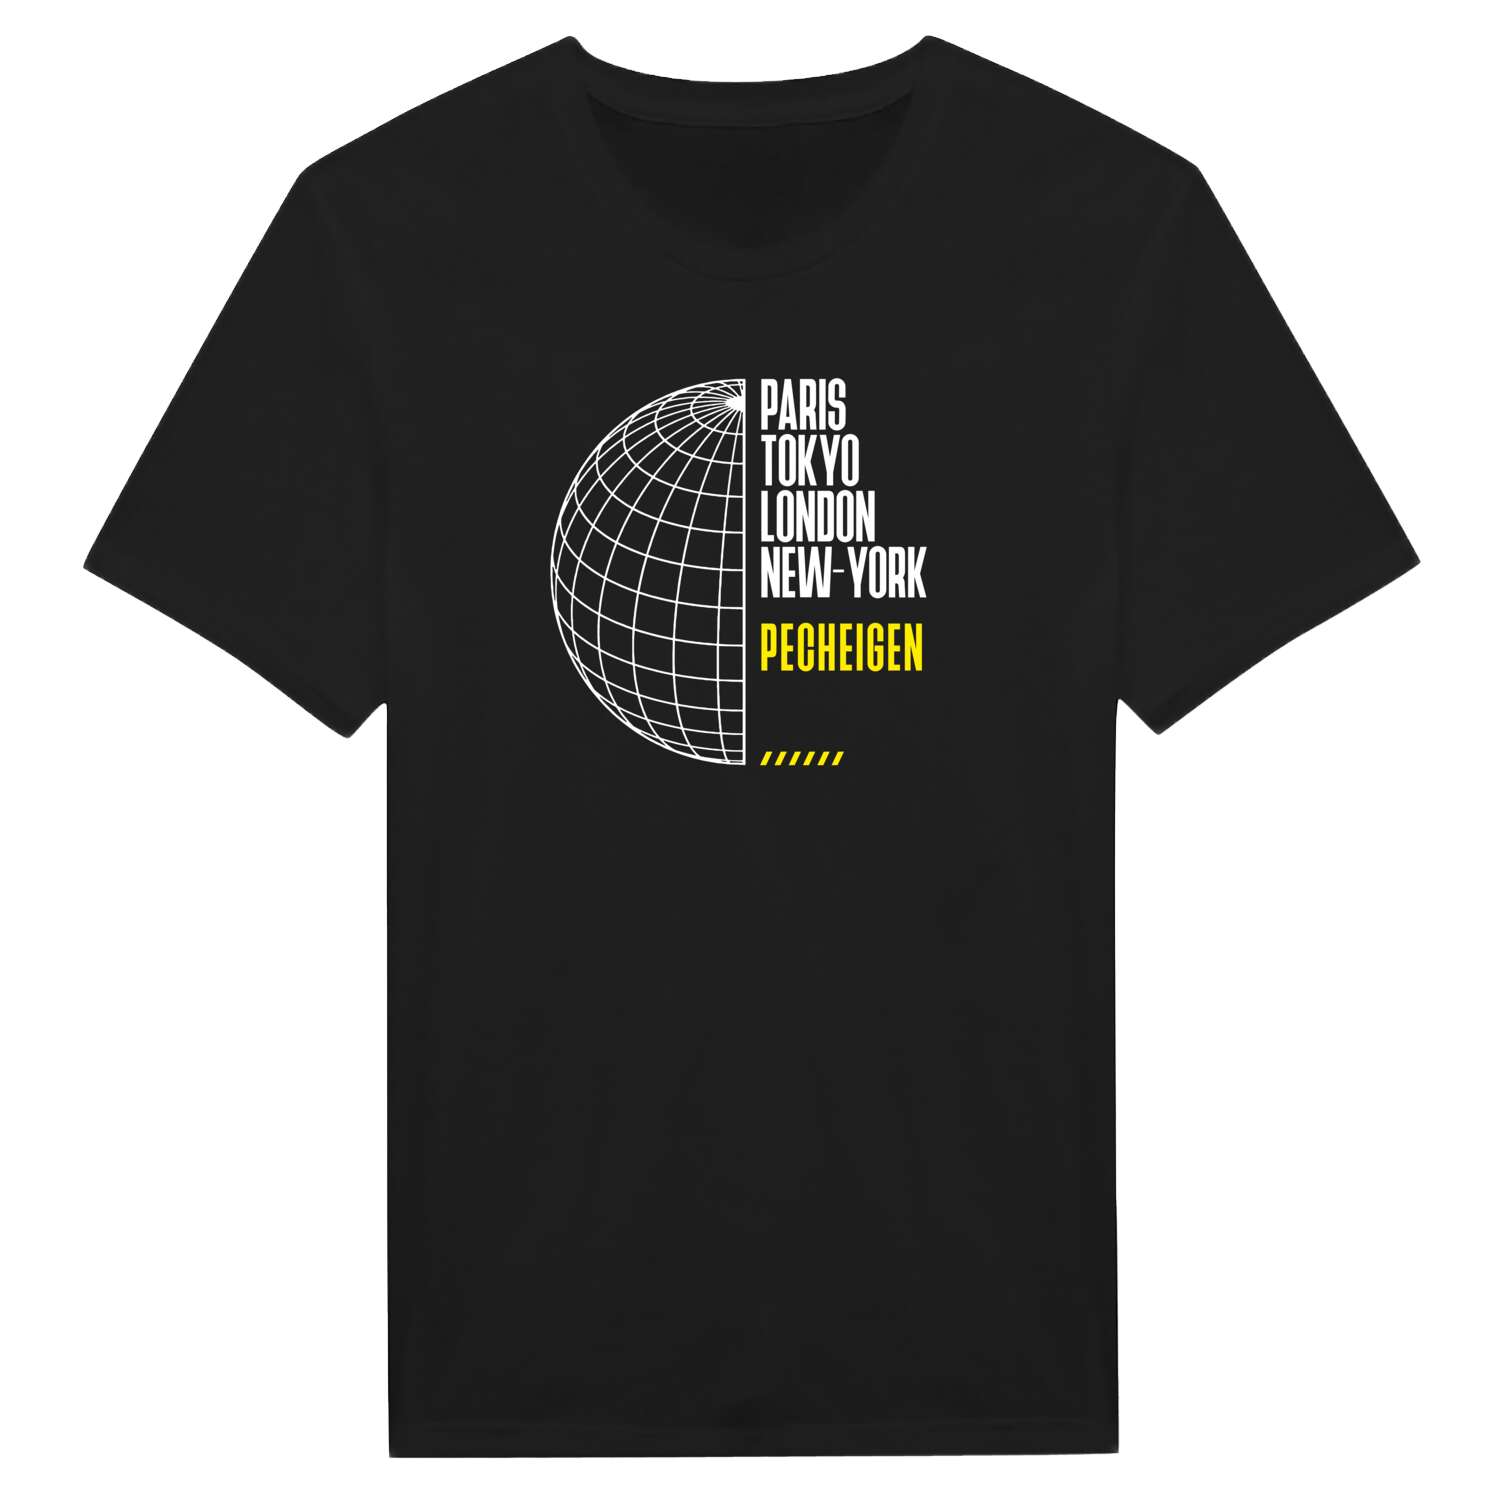 Pecheigen T-Shirt »Paris Tokyo London«